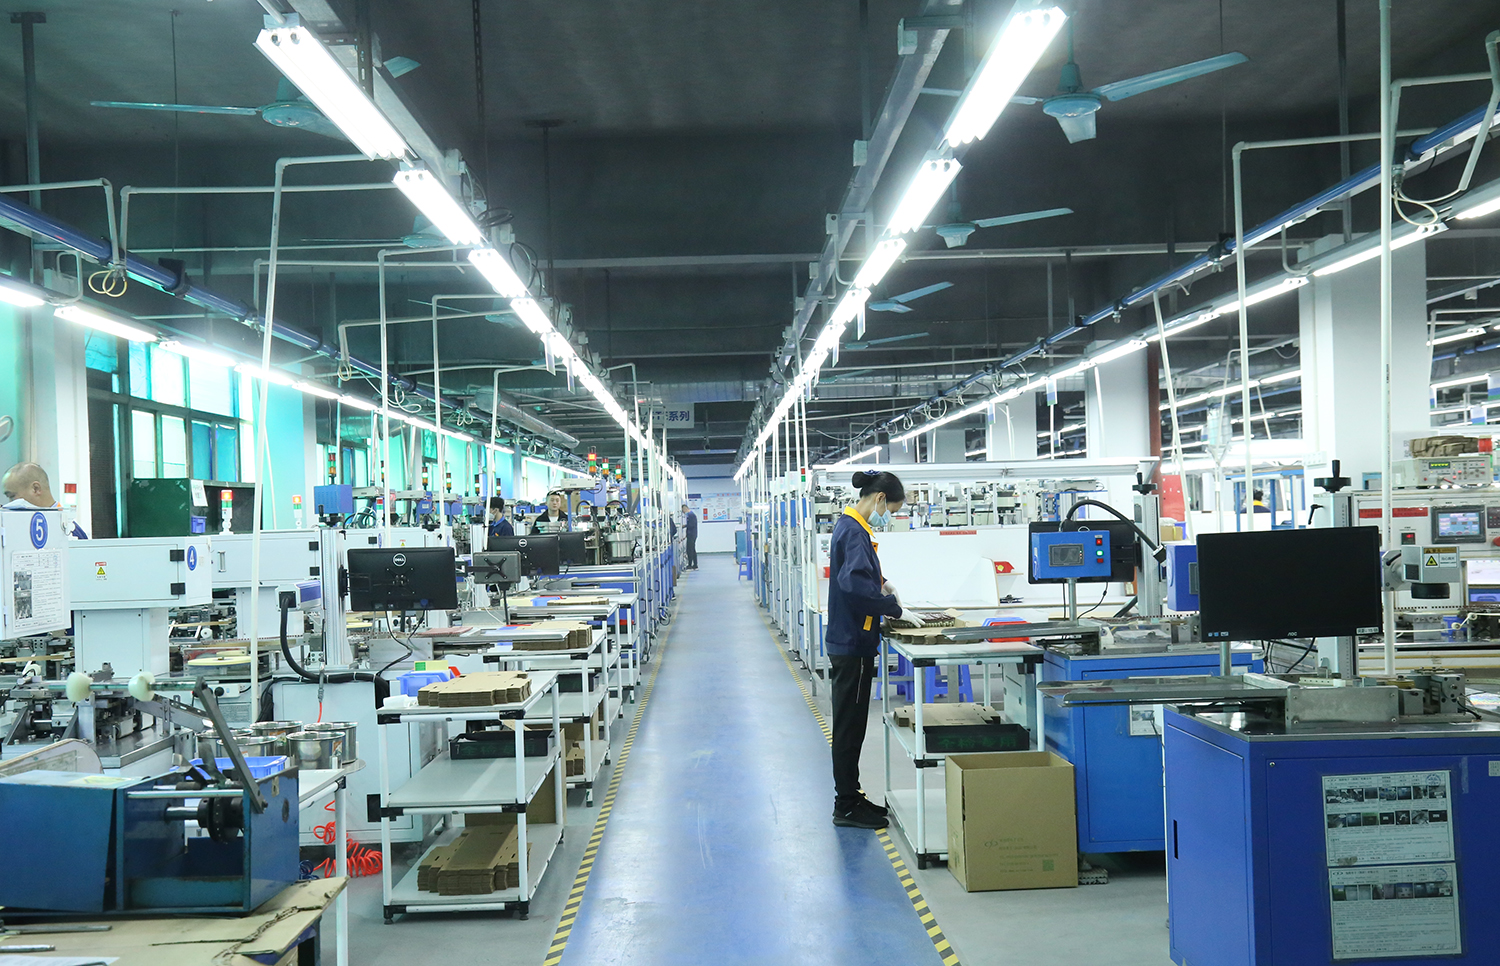 Shenzhen Factory